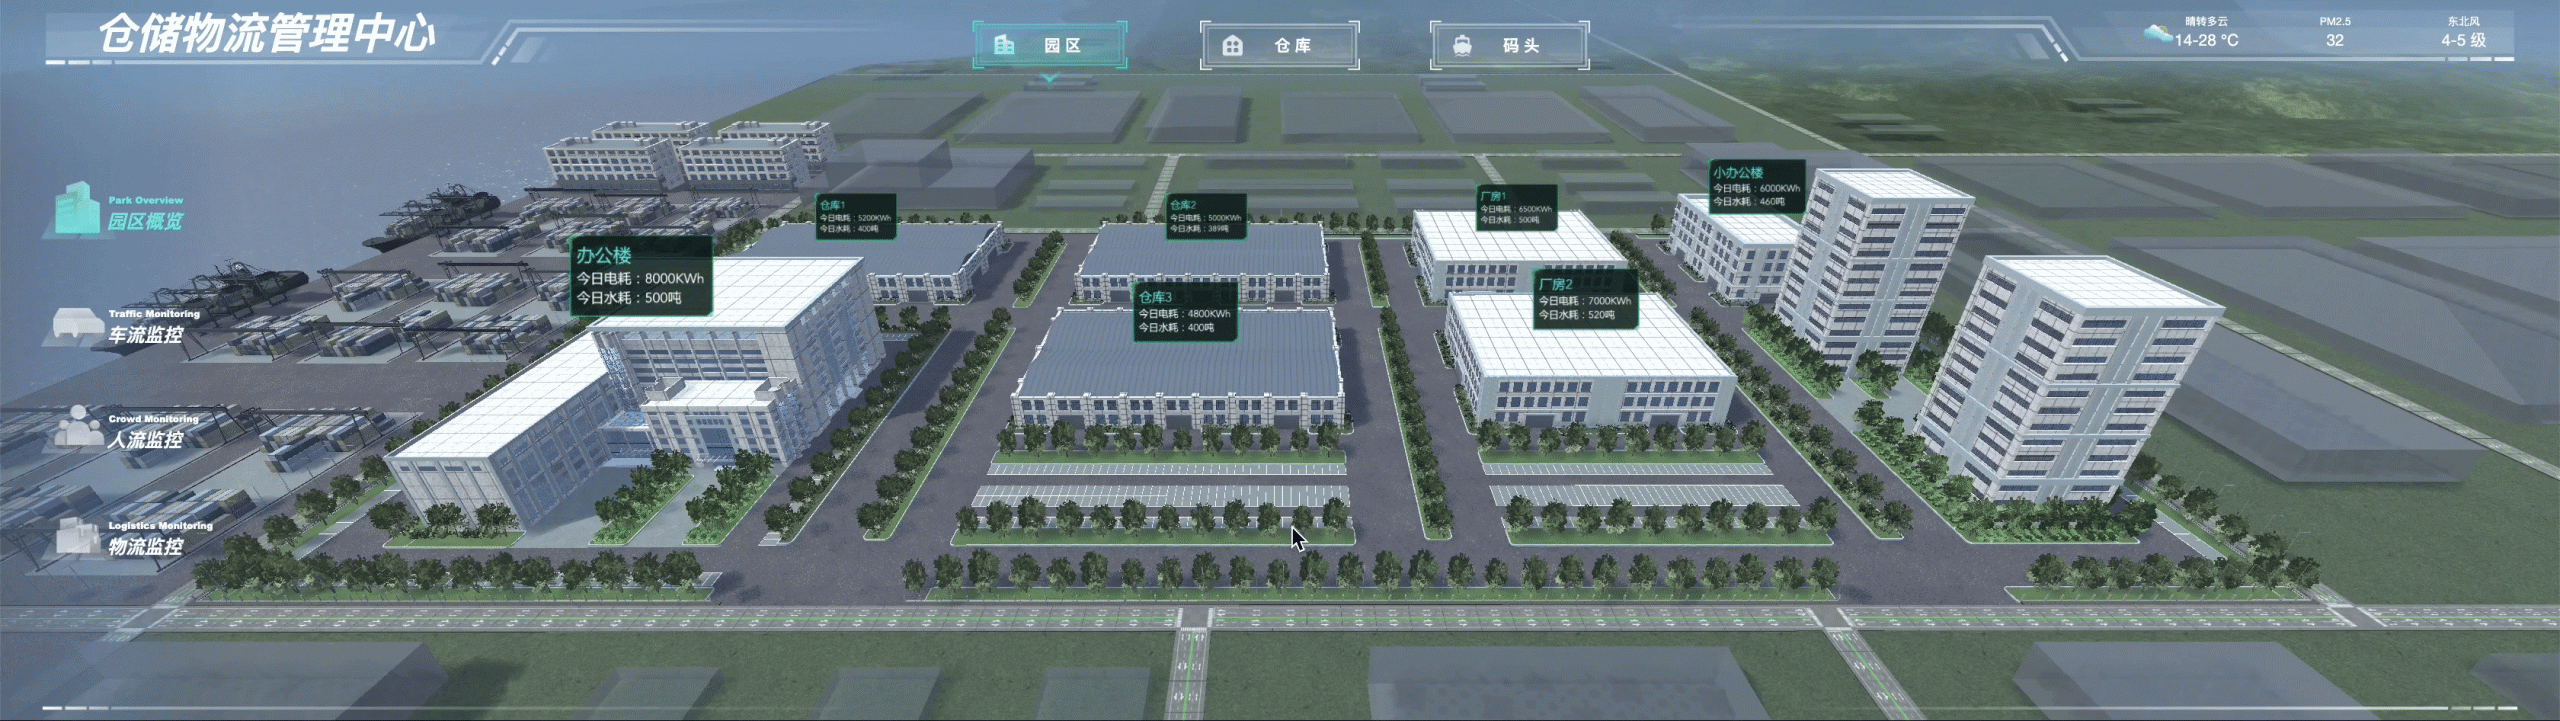 3d可视化公司,3D园区,3D工厂,数字孪生校园